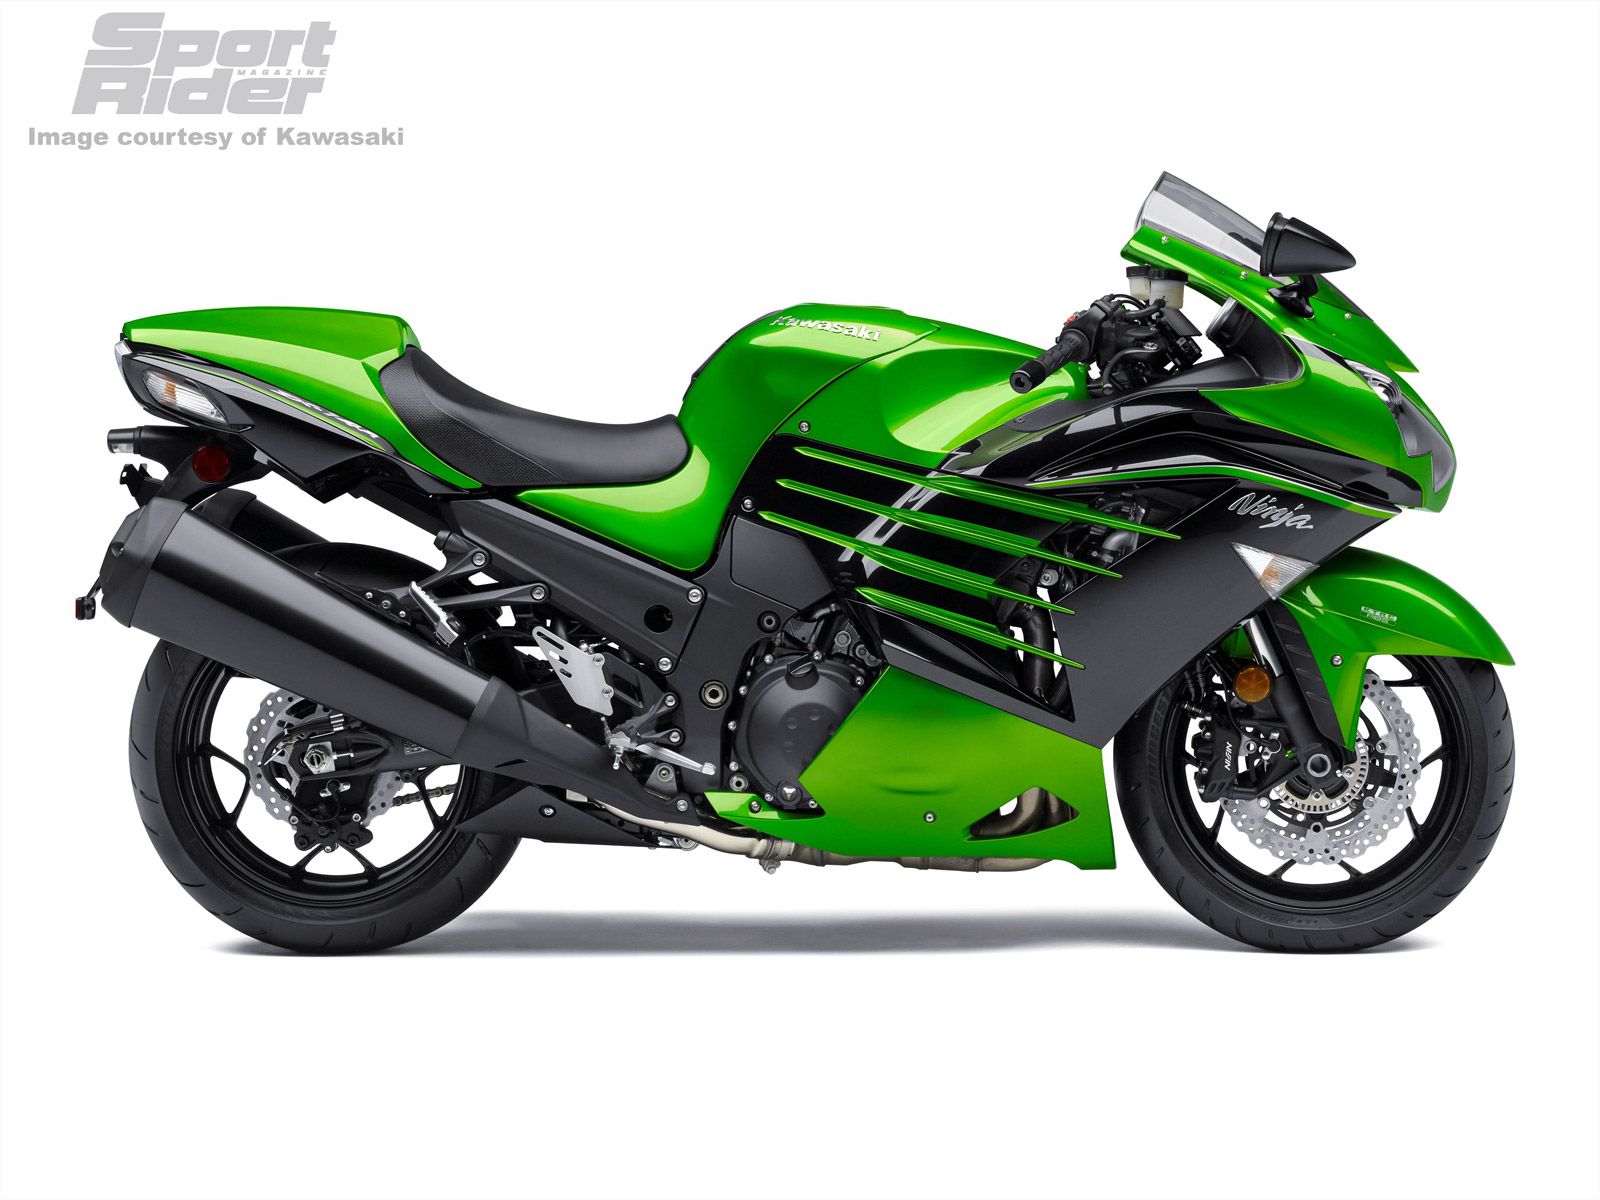 Kawasaki Announces More 2015 Models World